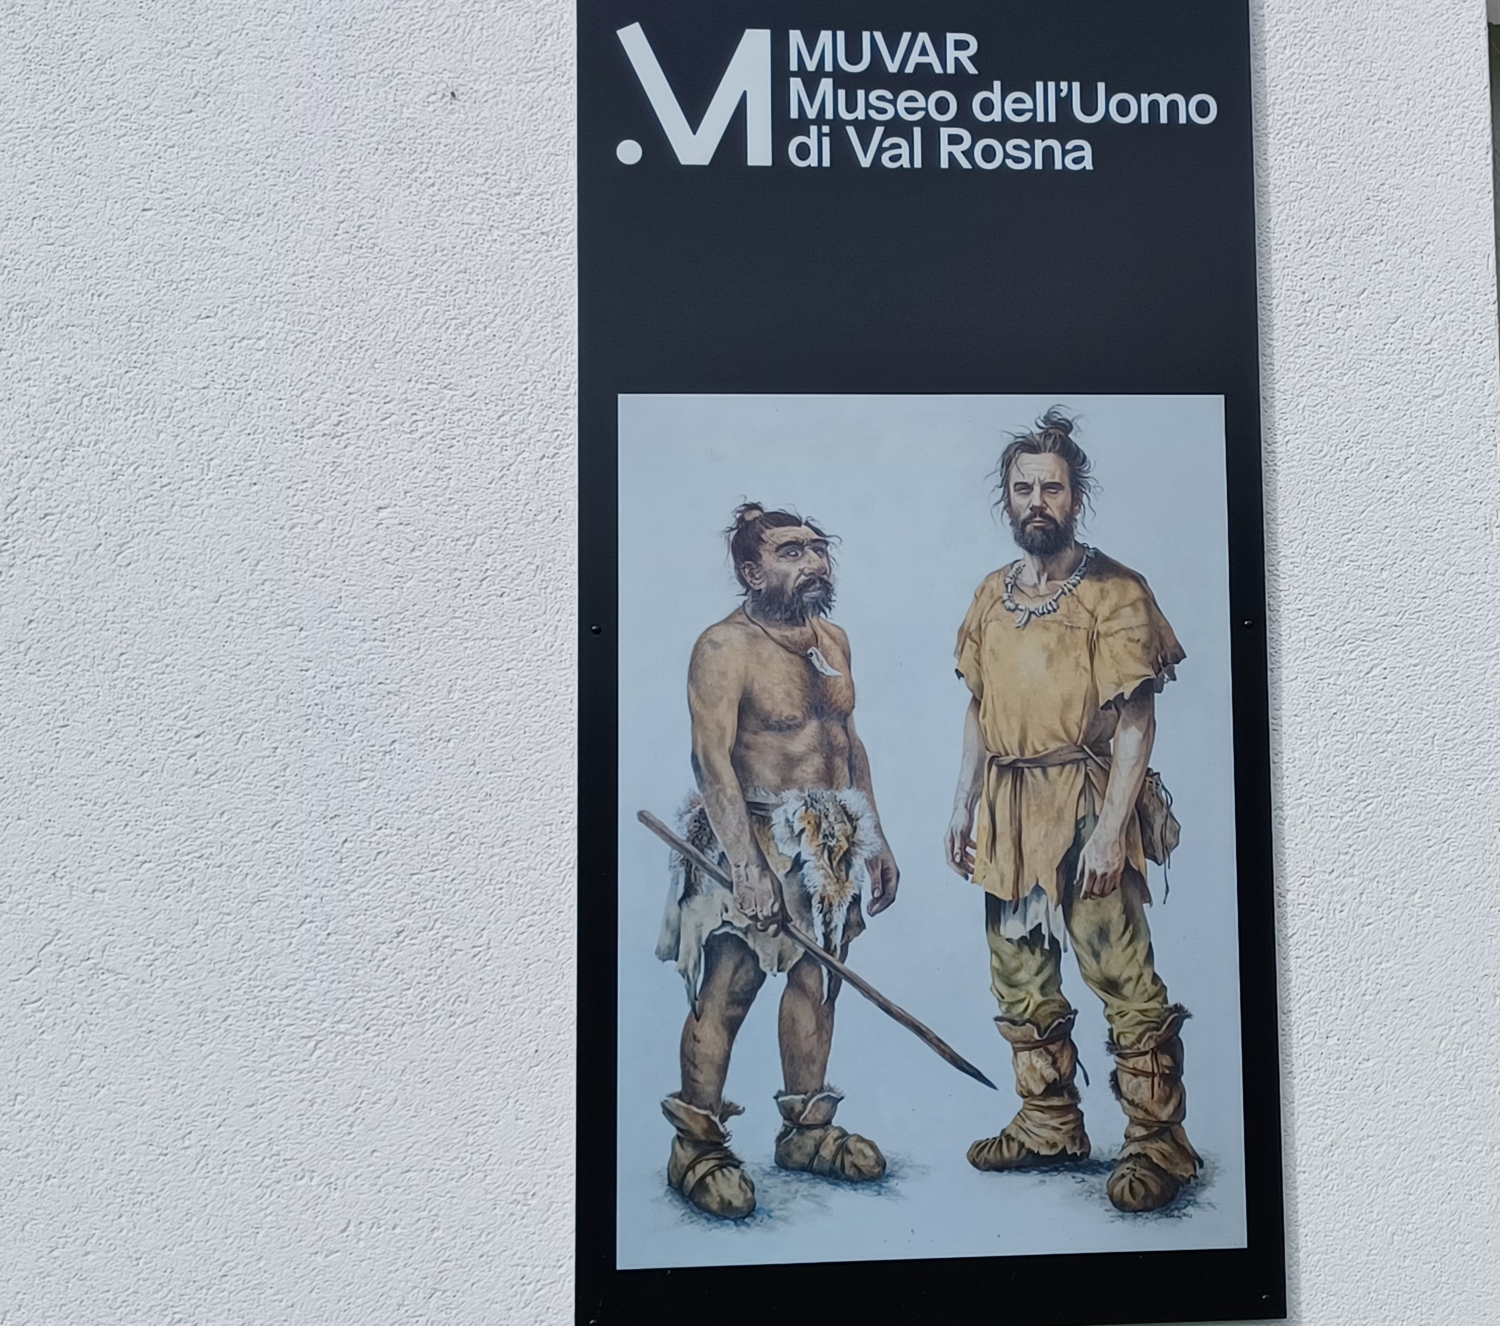 Museo Muvar 1